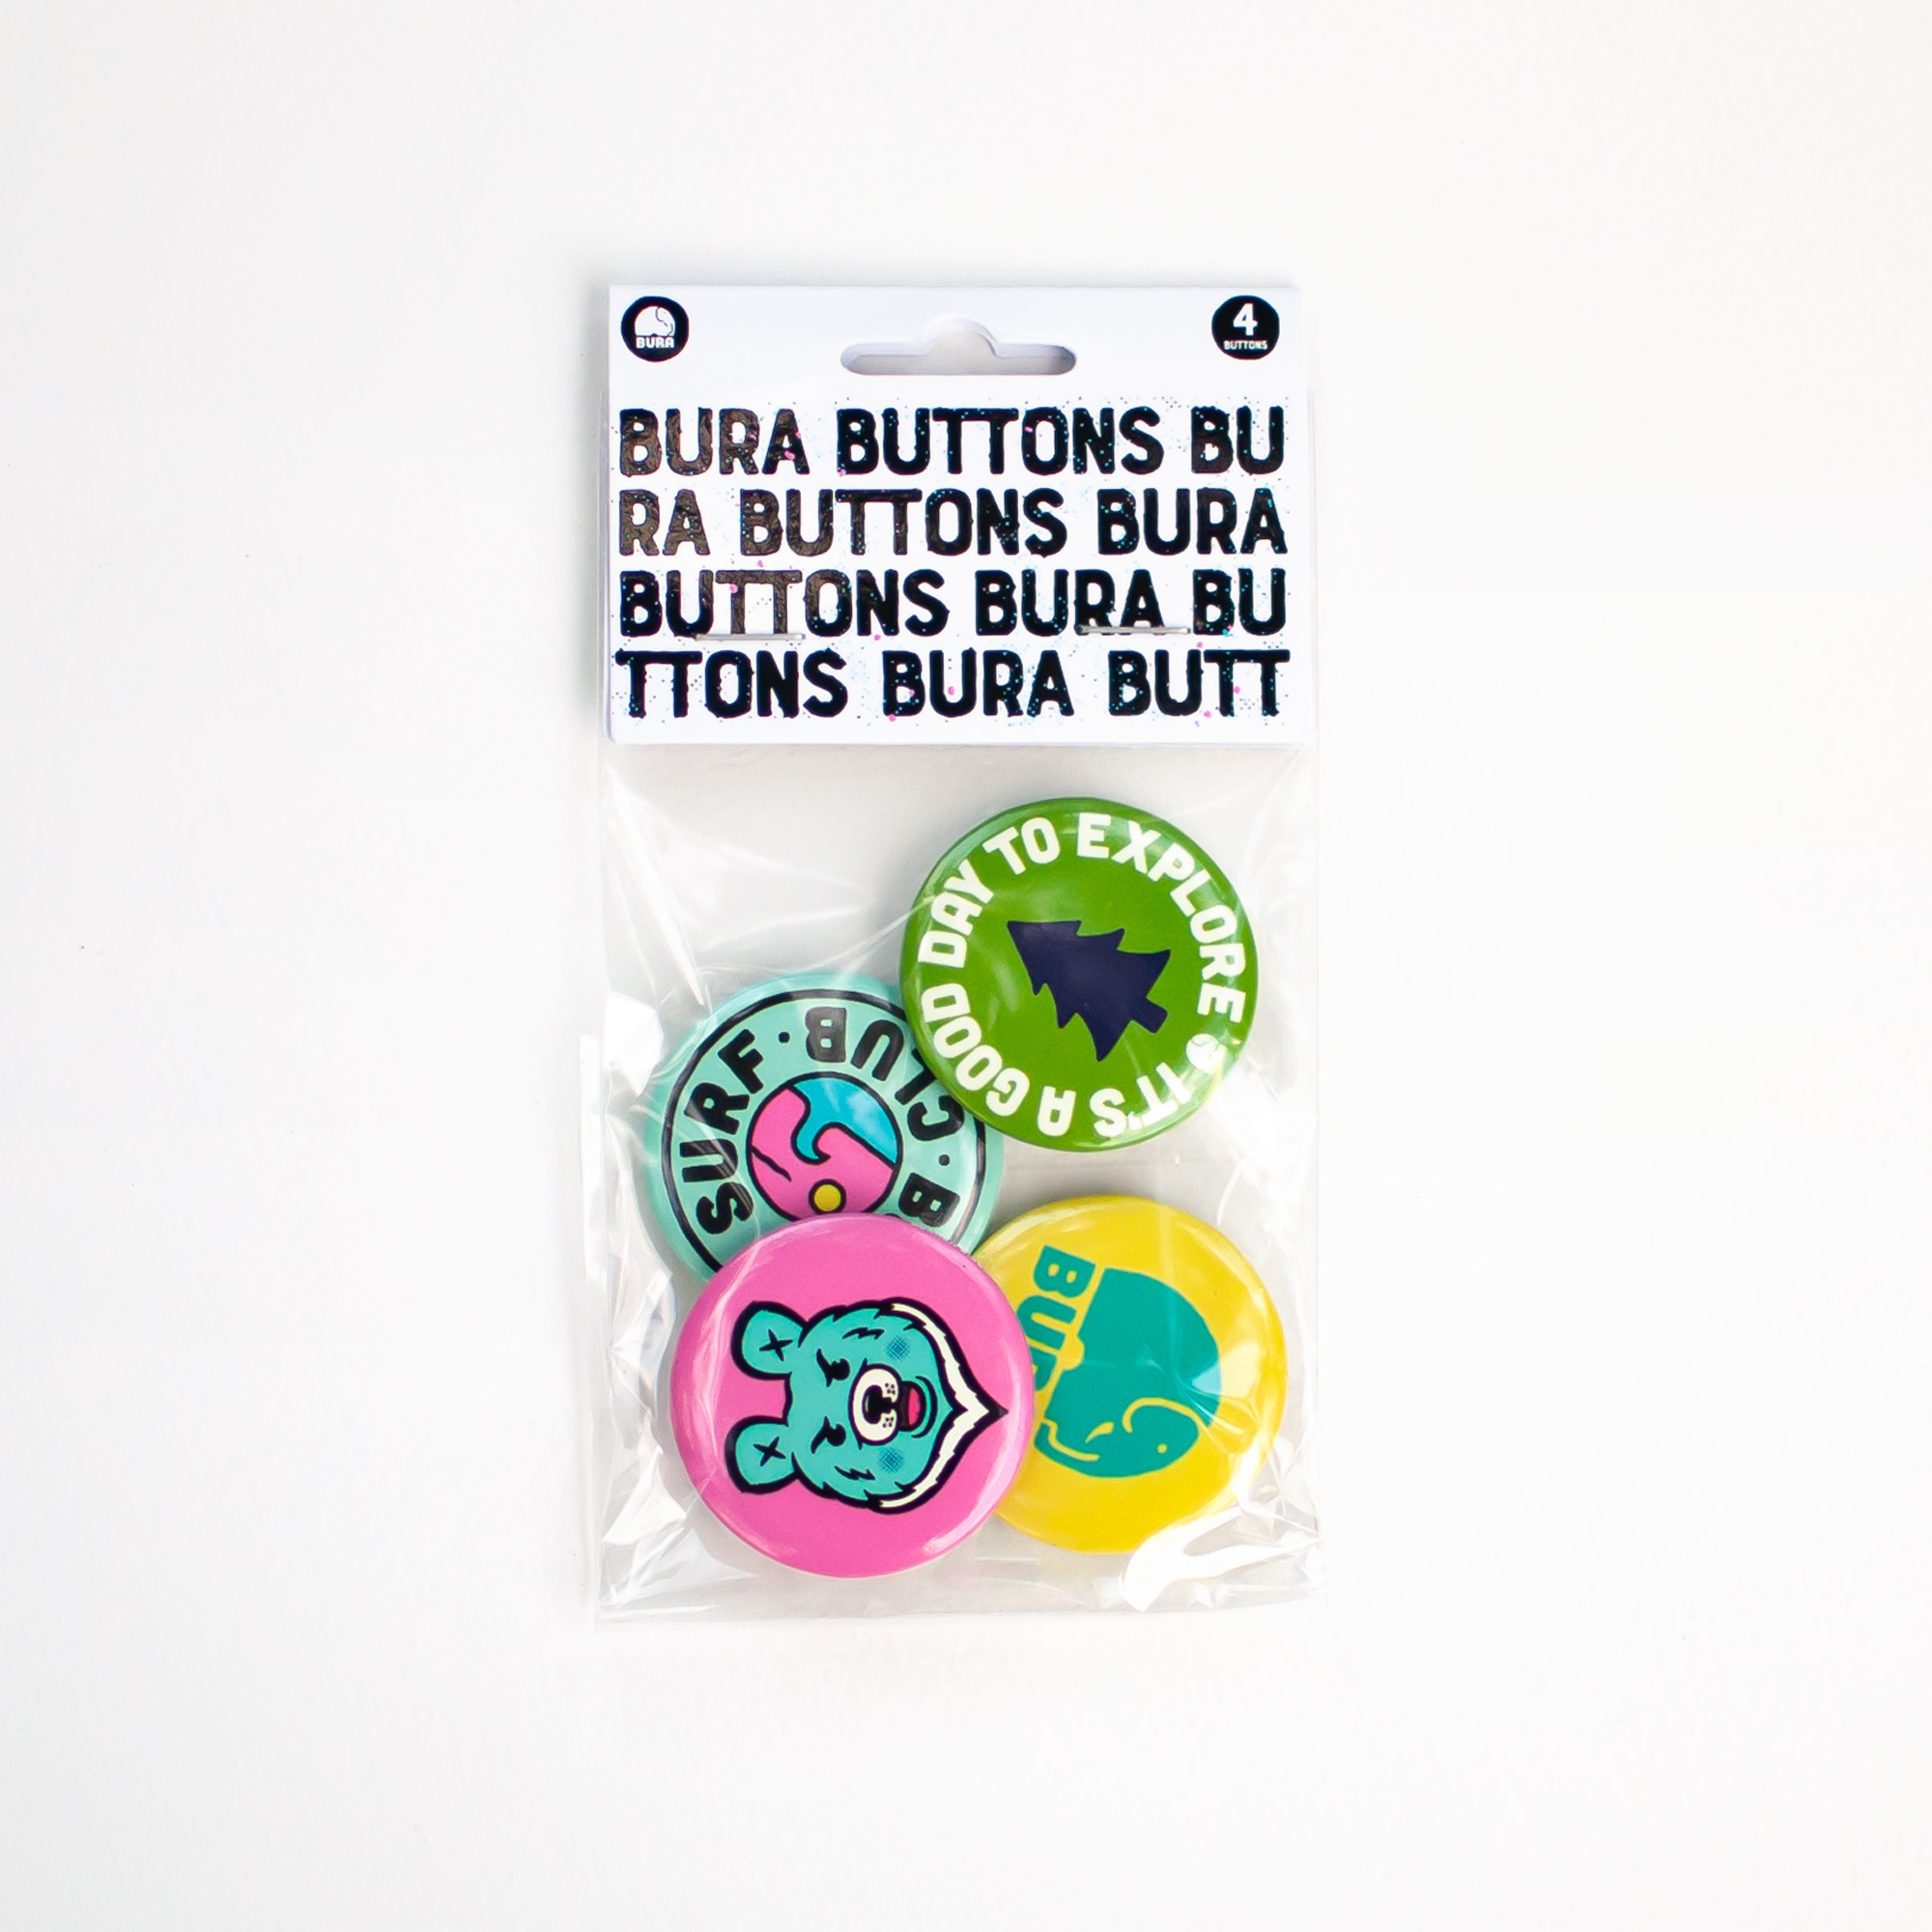 BURA button pack buttons Taiwan buttons bear button